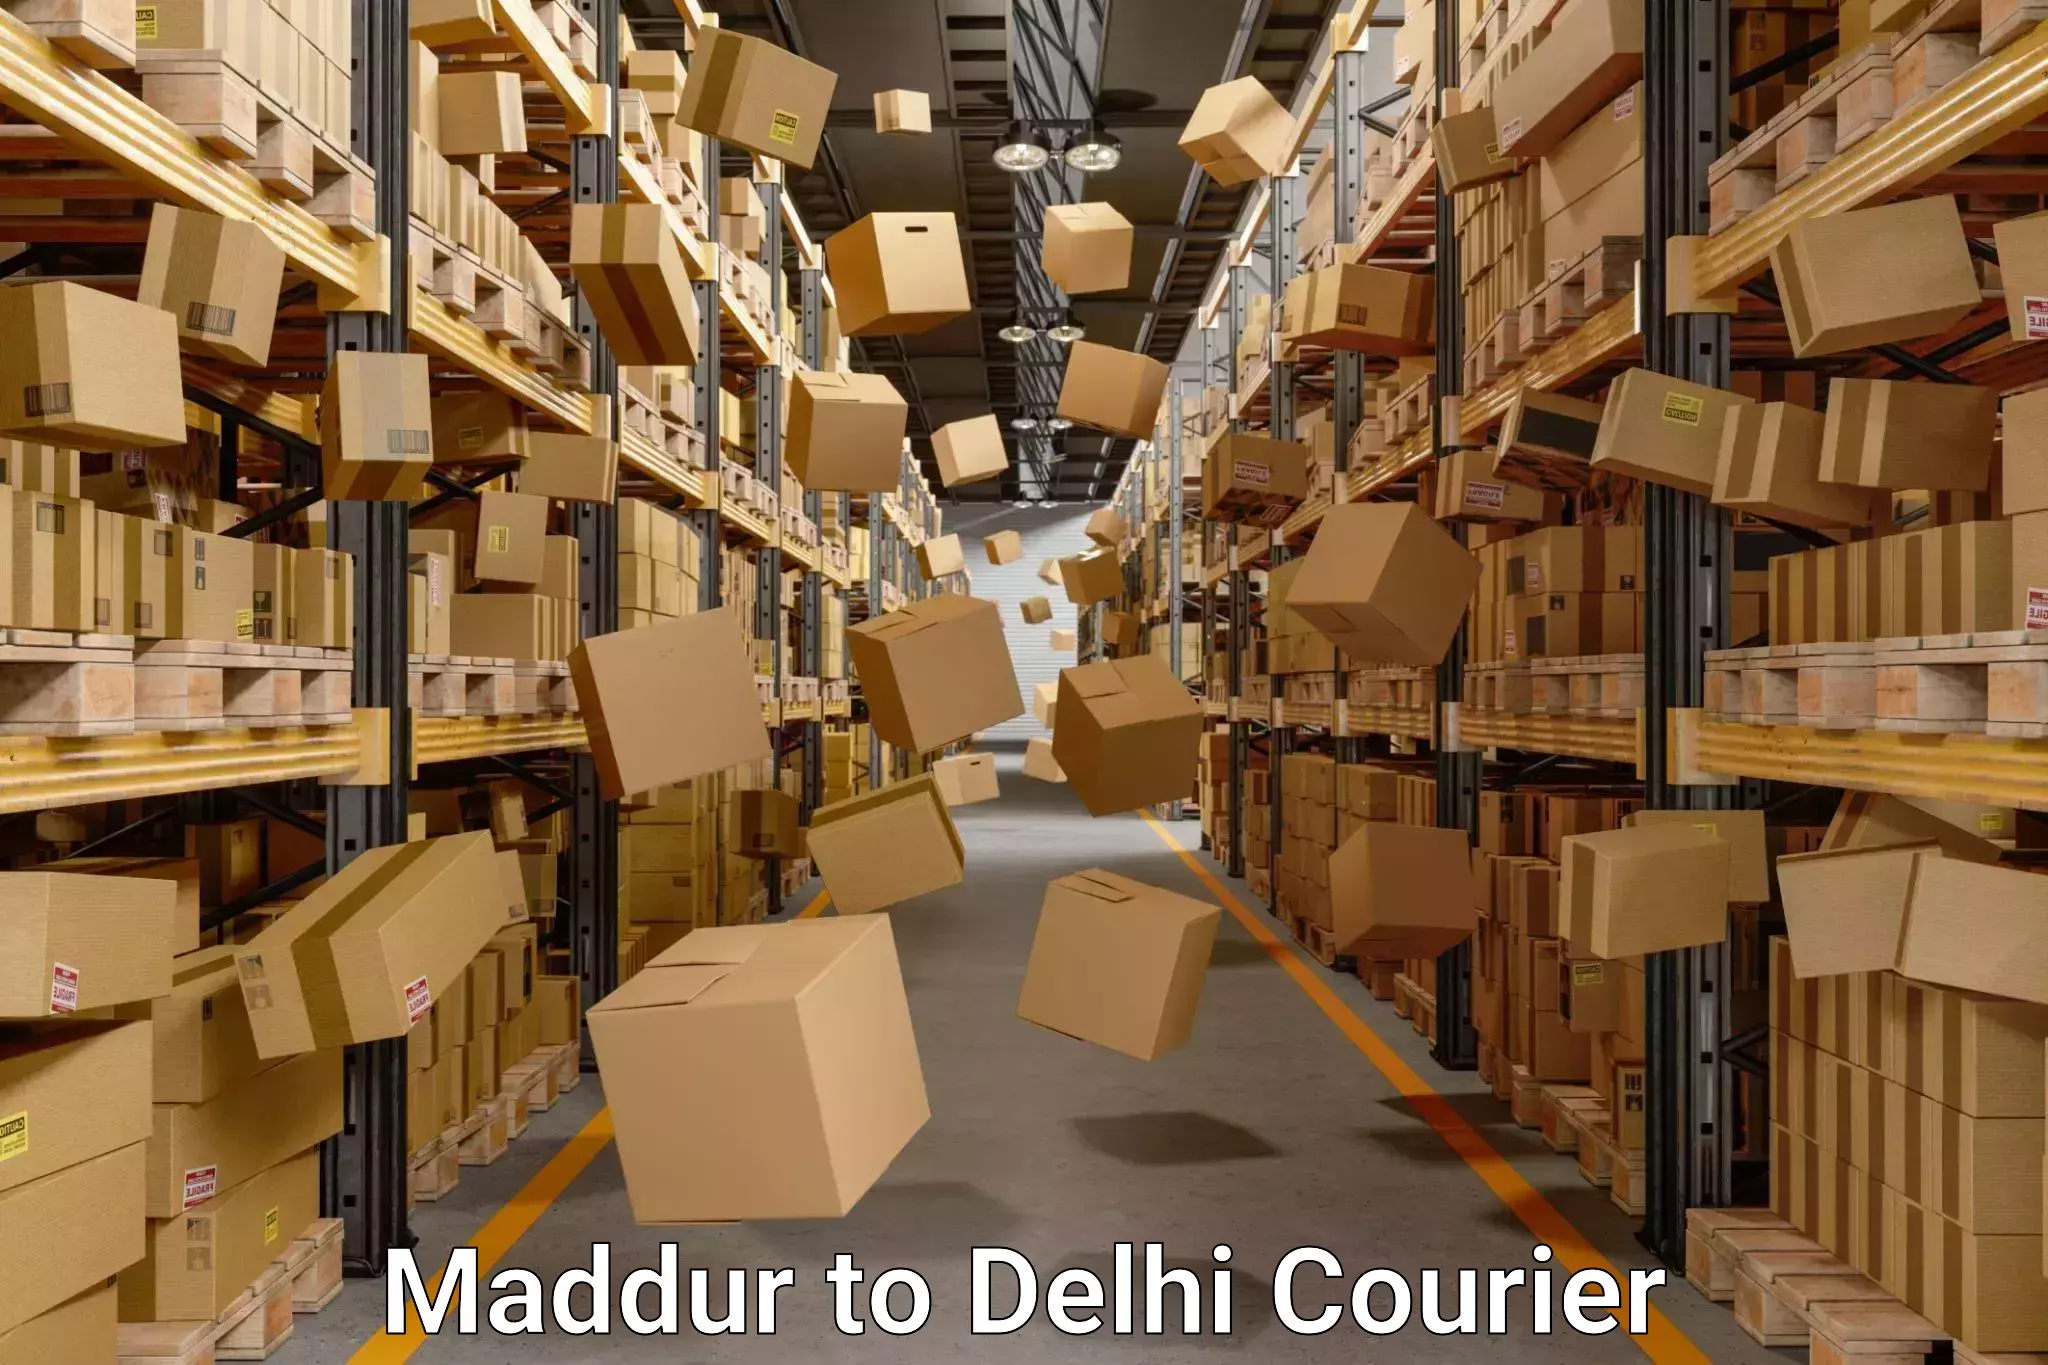 Comprehensive relocation services Maddur to Jamia Millia Islamia New Delhi